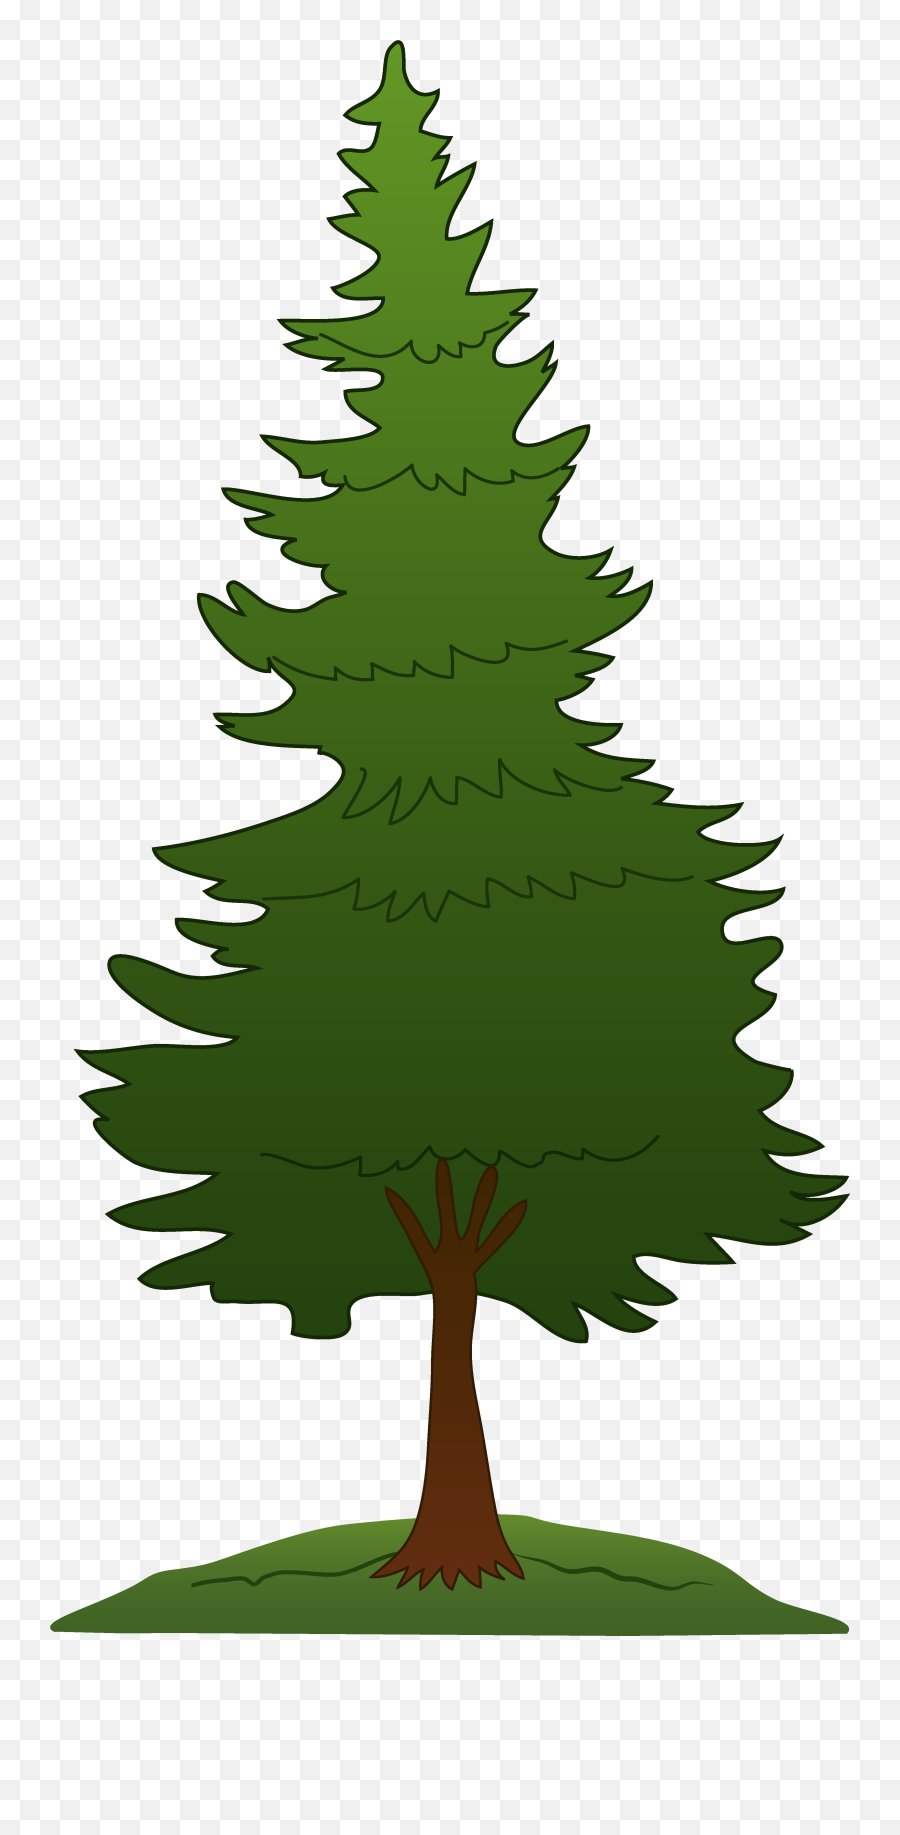 Clipart Trees Pine Clipart Trees Pine - Pine Tree Clipart Png Emoji,Pine Tree Emoji